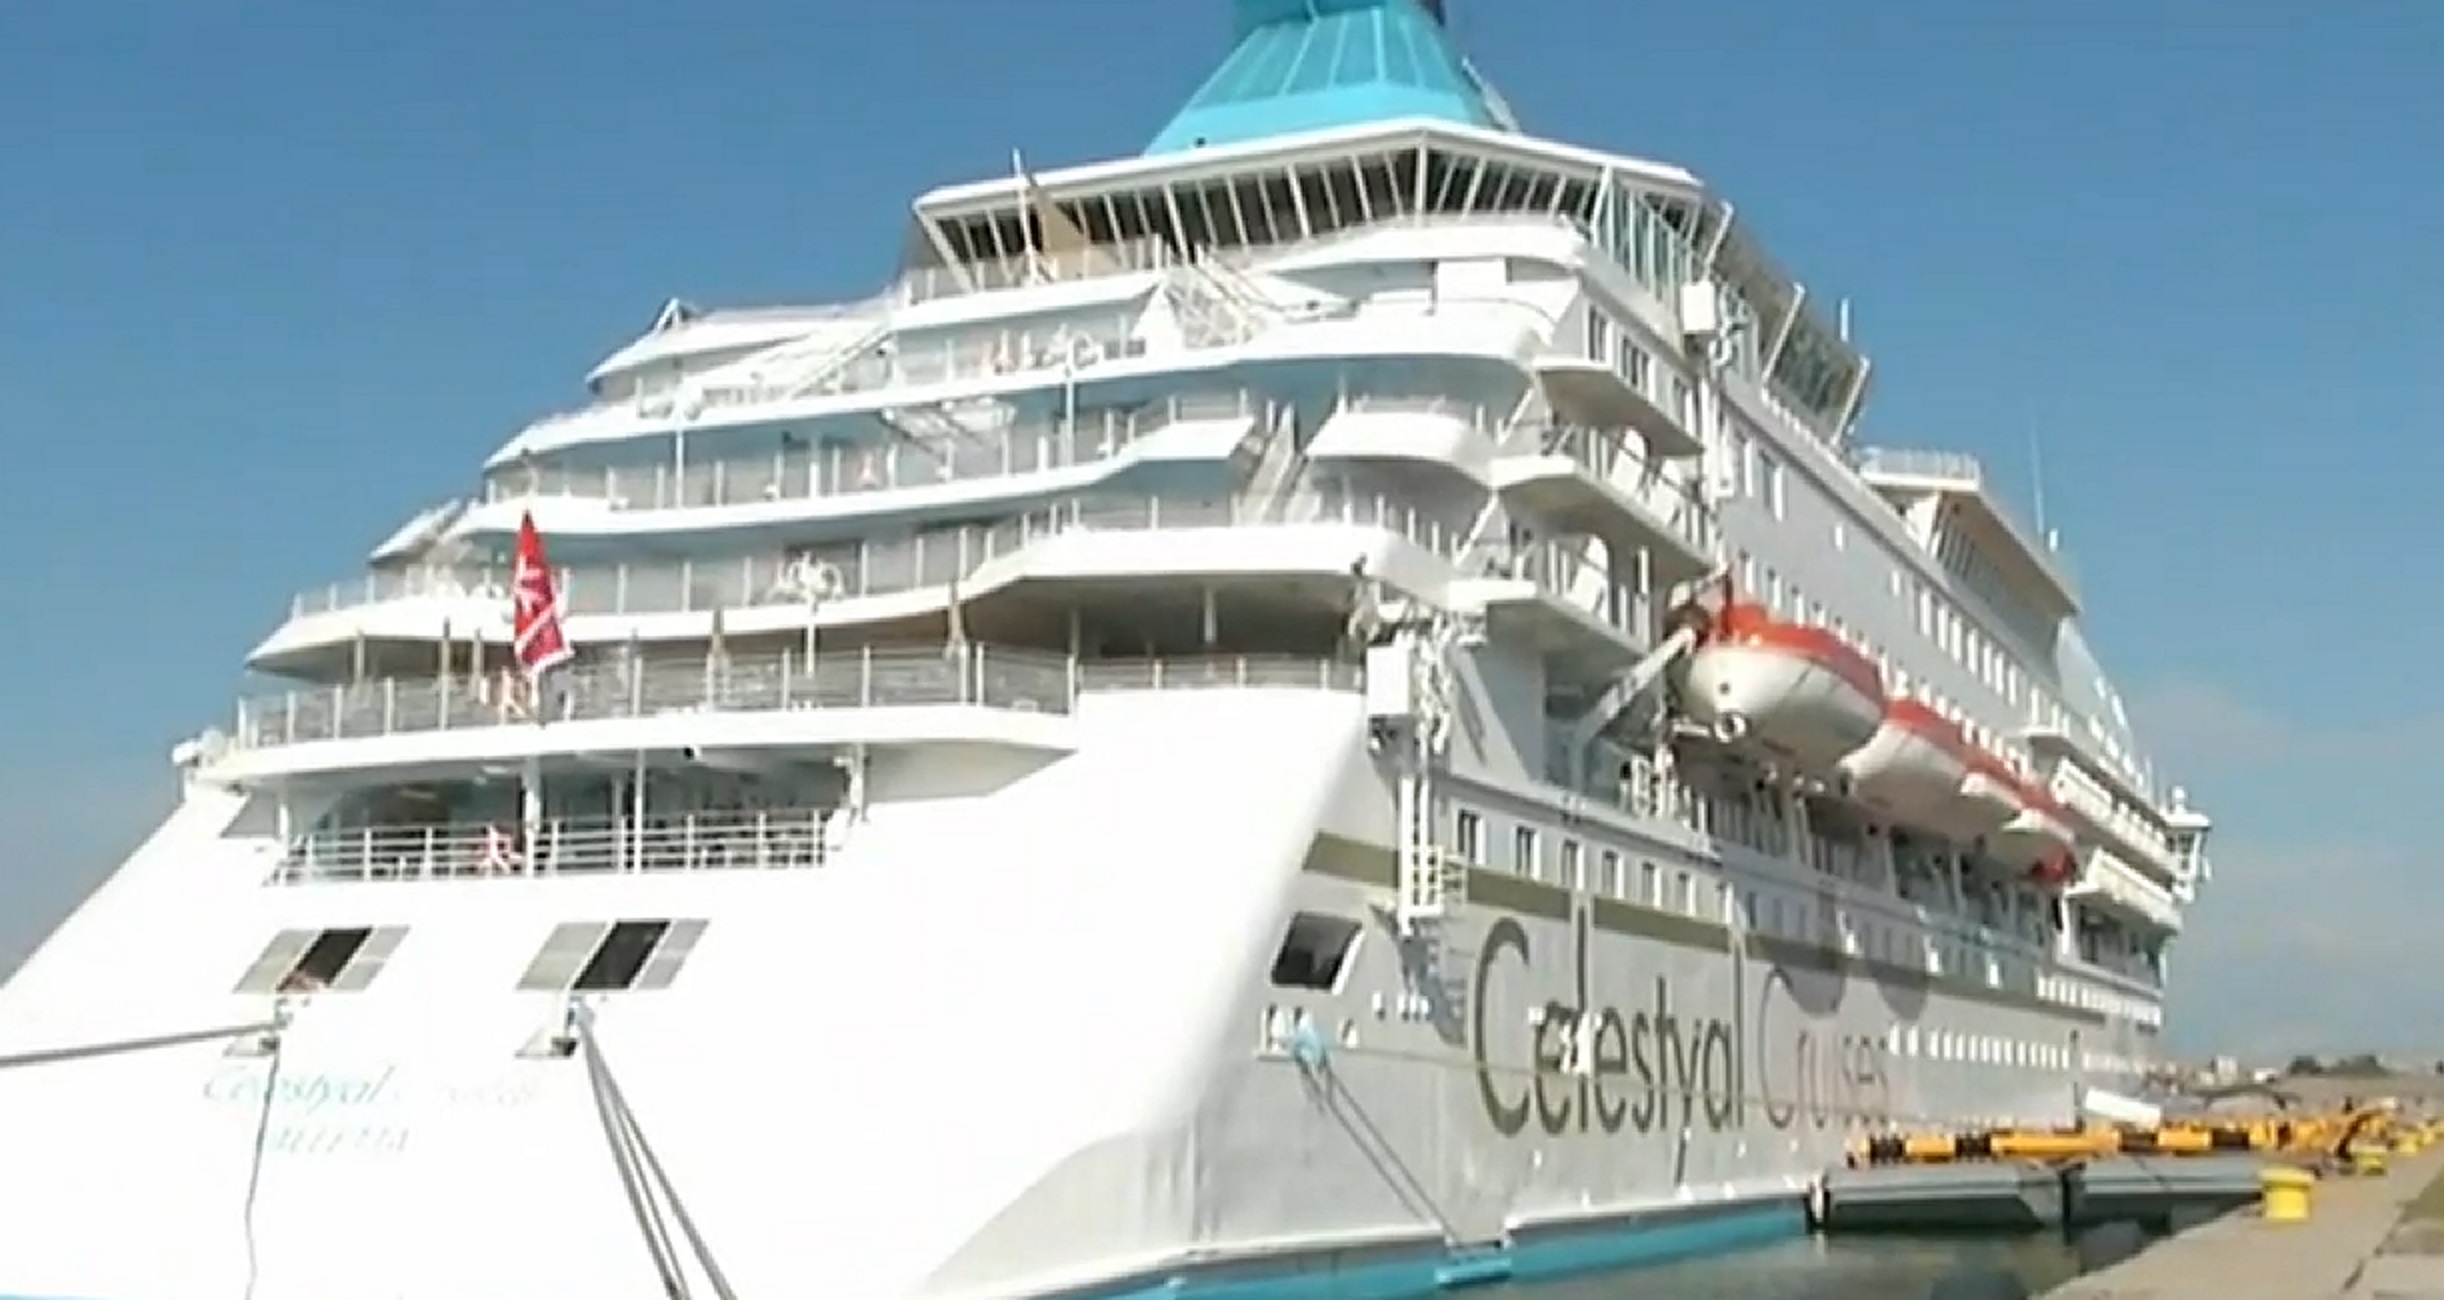 Θεσσαλονίκη: Δείτε το κρουαζιερόπλοιο «Celestyal Crystal» που έφερε εκατοντάδες τουρίστες στην πόλη